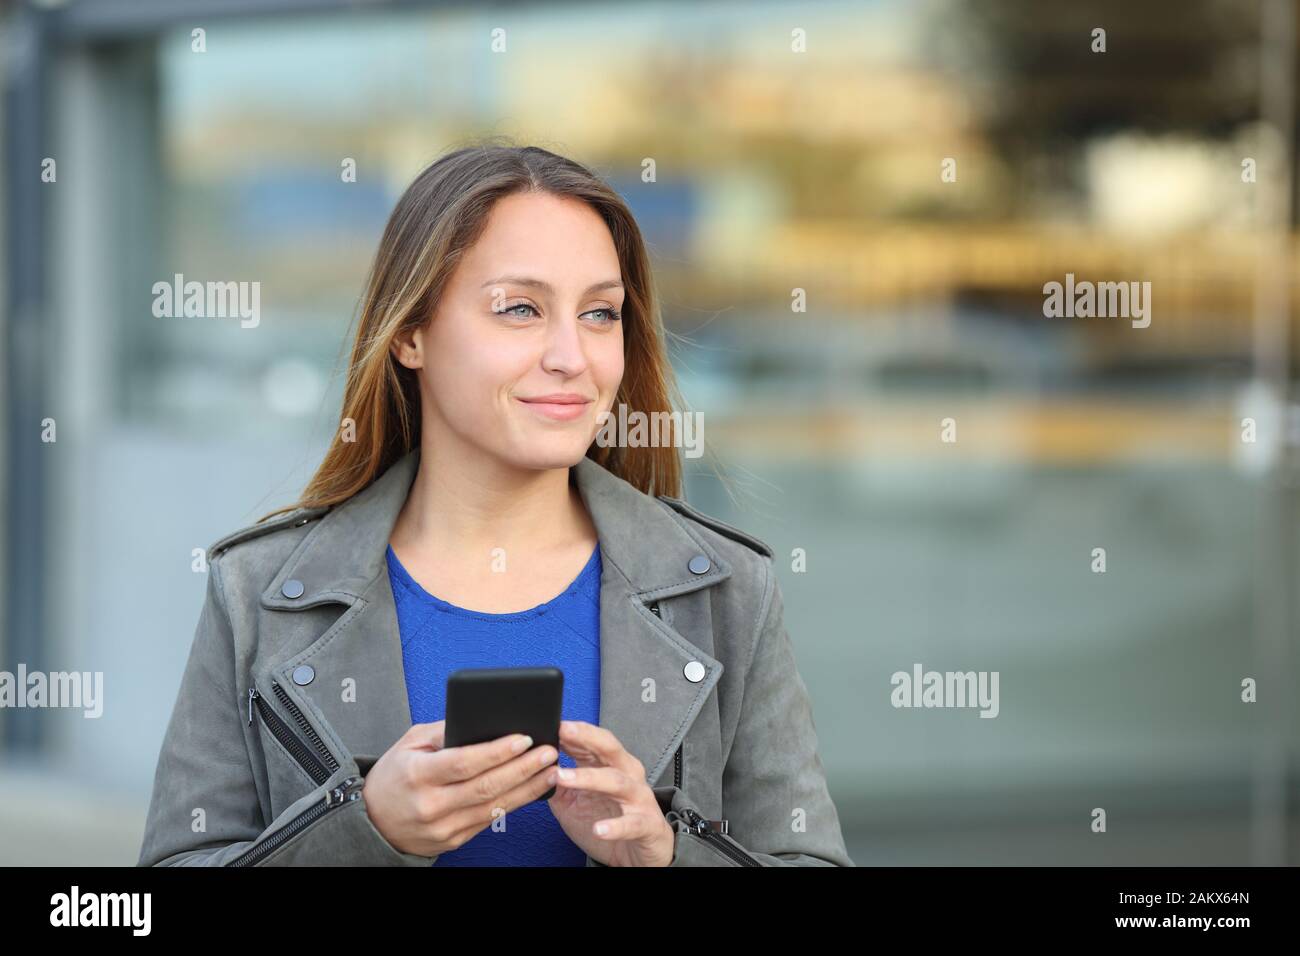 Vue avant portrait of a woman holding mobile phone à côté de dans la rue Banque D'Images